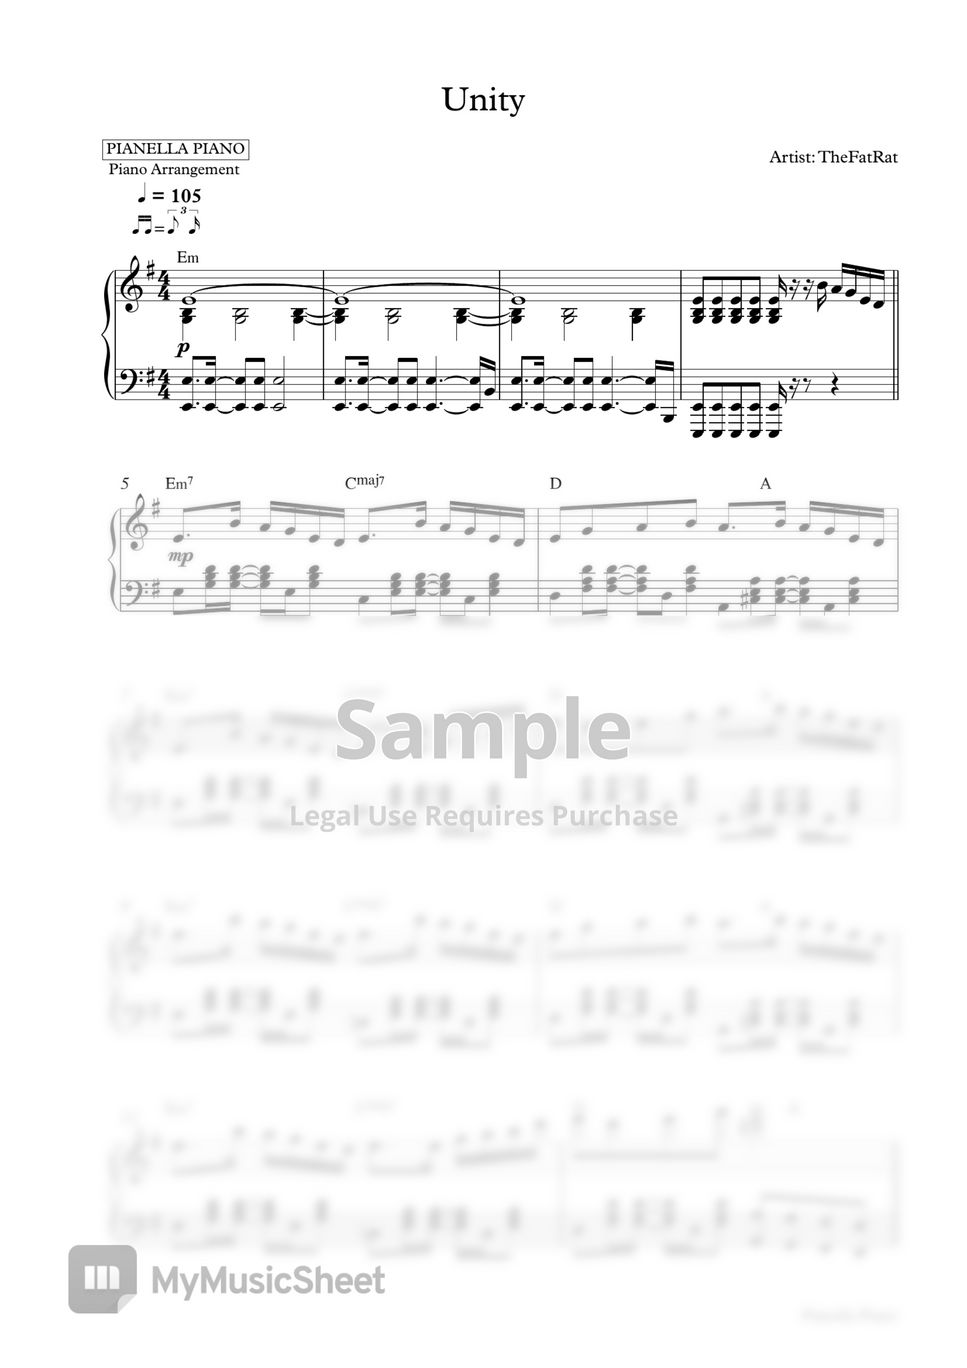 TheFatRat - Unity (Piano Sheet) by Pianella Piano